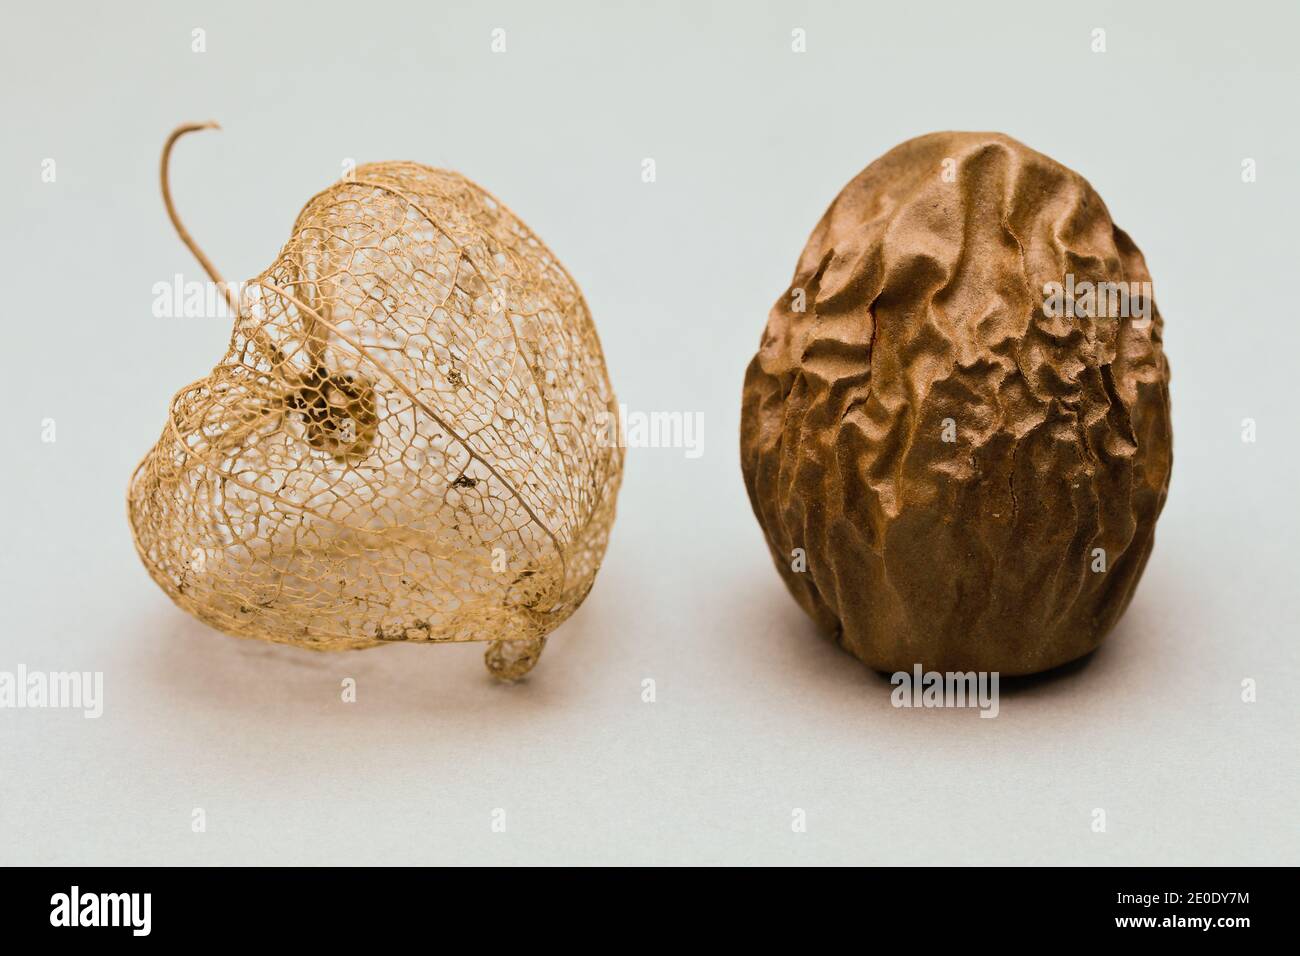 Physalis peruviana et mangue - pierre - encore la vie de objets d'origine végétale Banque D'Images